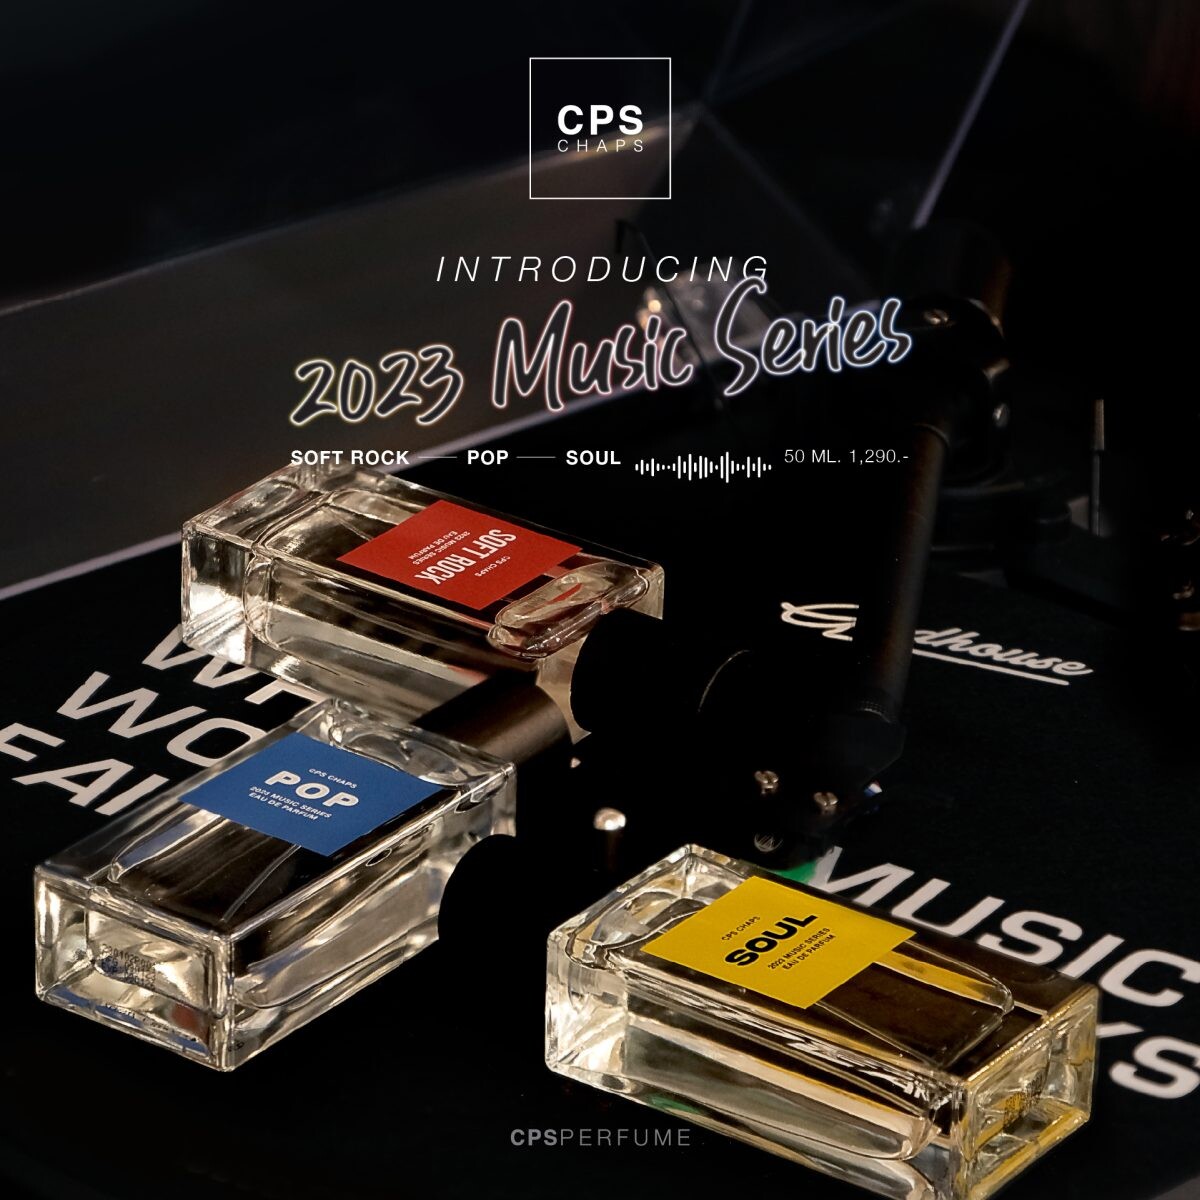 CPS CHAPS เปิดตัวน้ำหอมใหม่ล่าสุด "2023 MUSIC SERIES" แรงบันดาลใจจากจังหวะดนตรี สู่กลิ่นหอมอันเป็นเอกลักษณ์